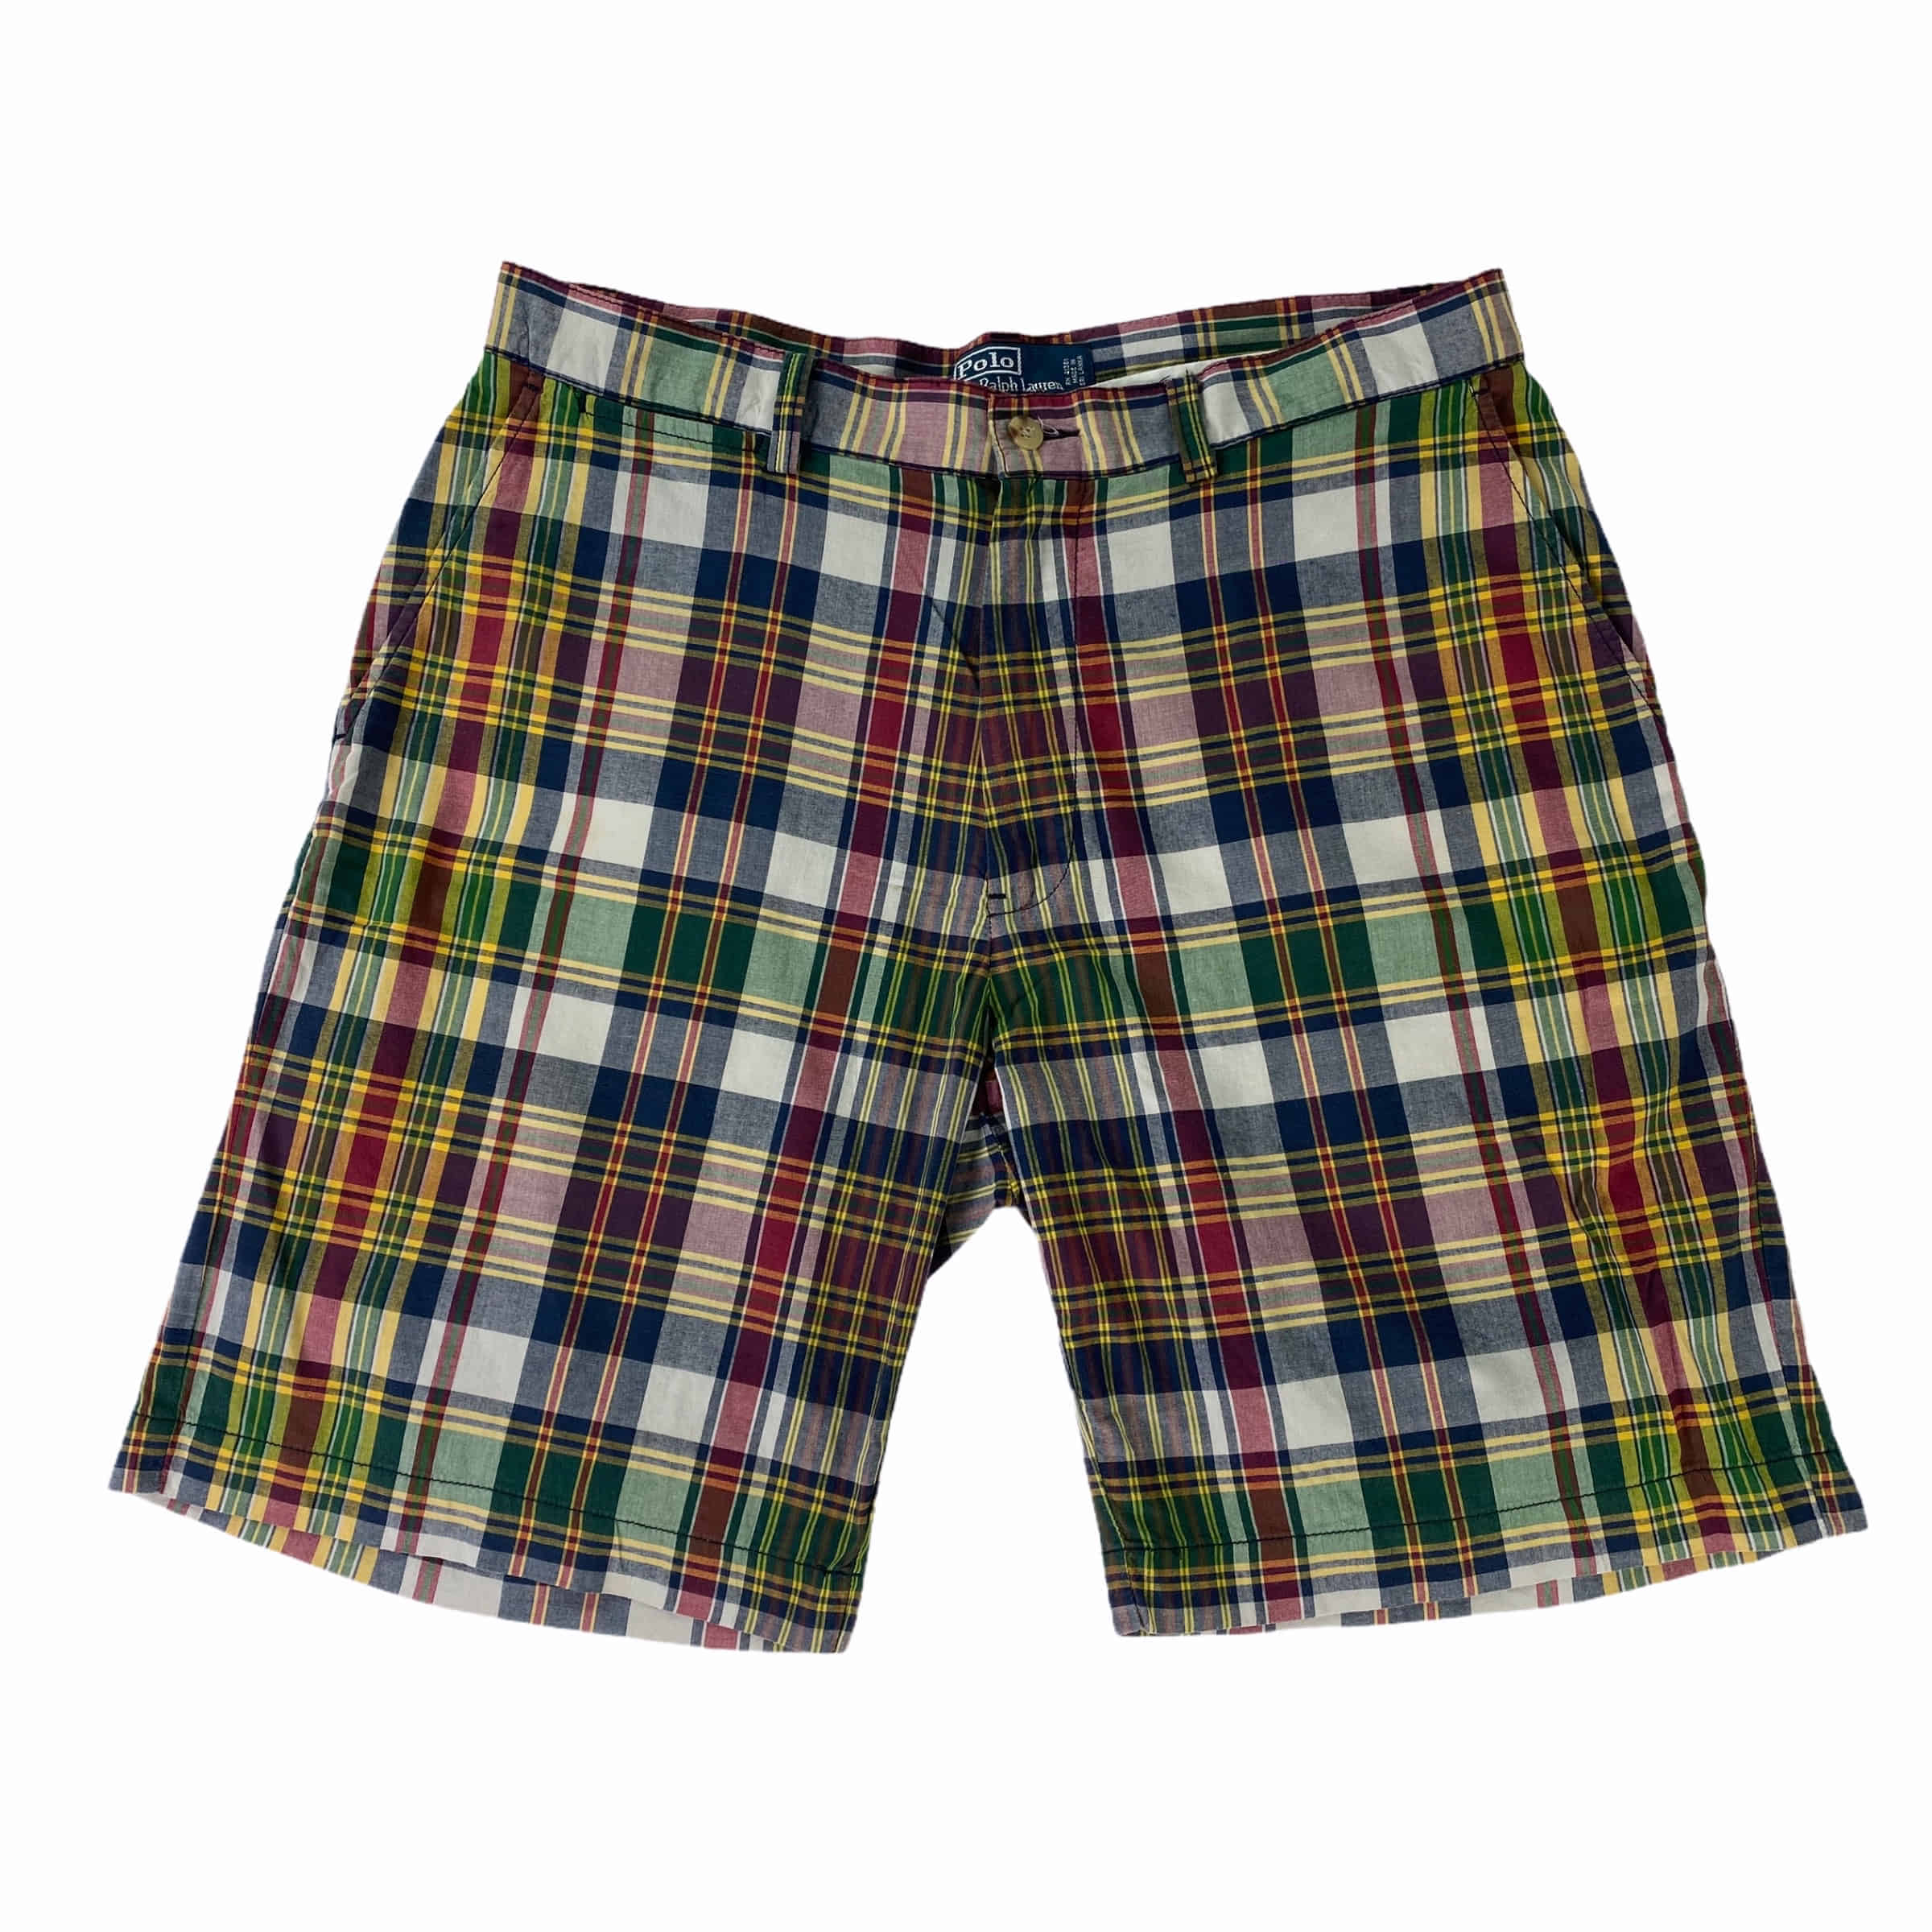 [Ralph Lauren] Plaid Check Shorts - Size 33